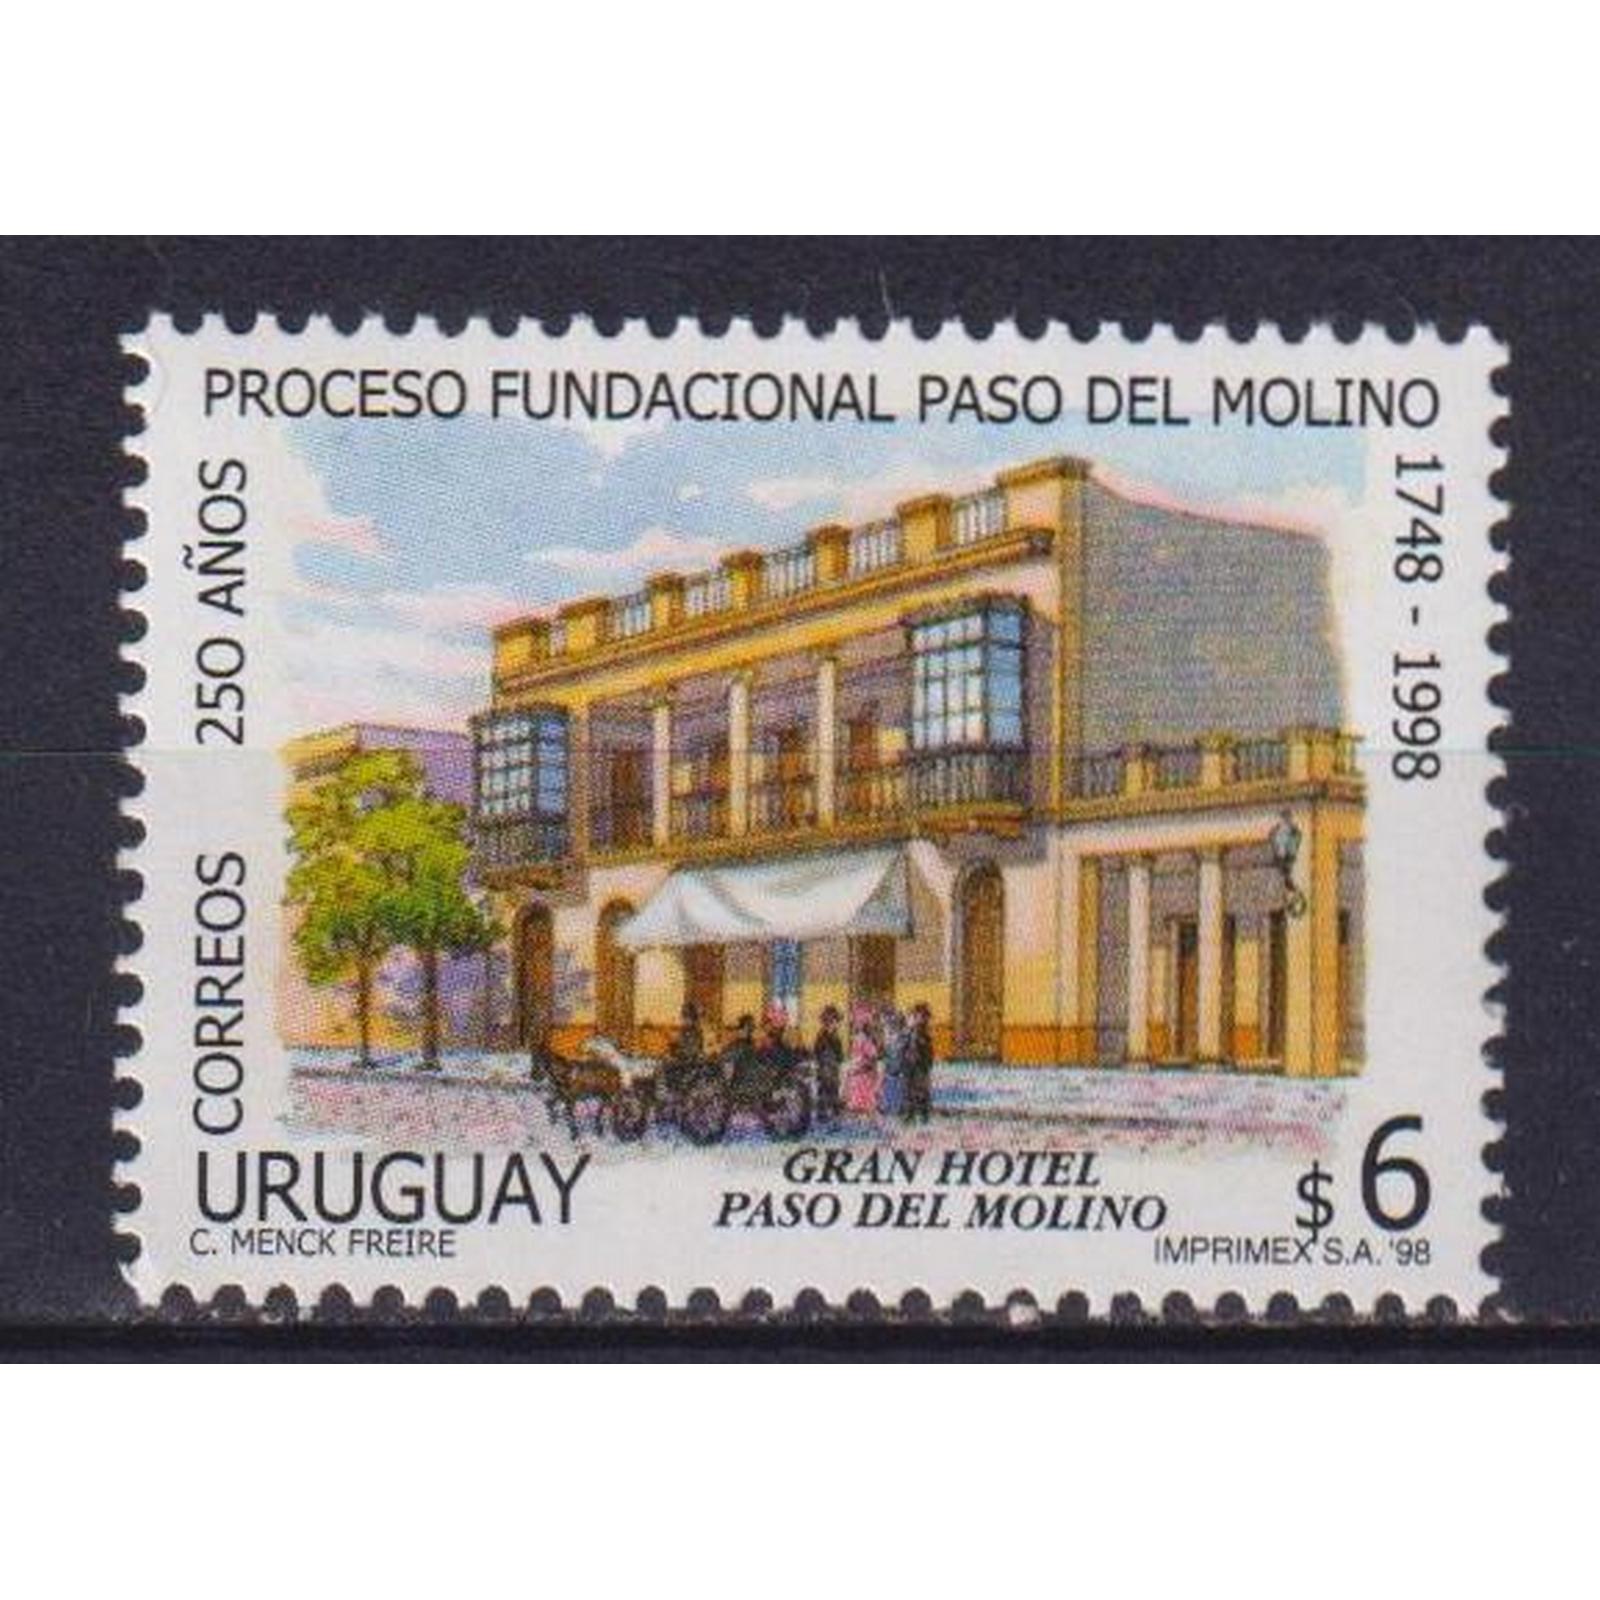 фото Почтовые марки уругвай 250 лет со дня основания пасо-дель-молино туризм почтовые марки мира